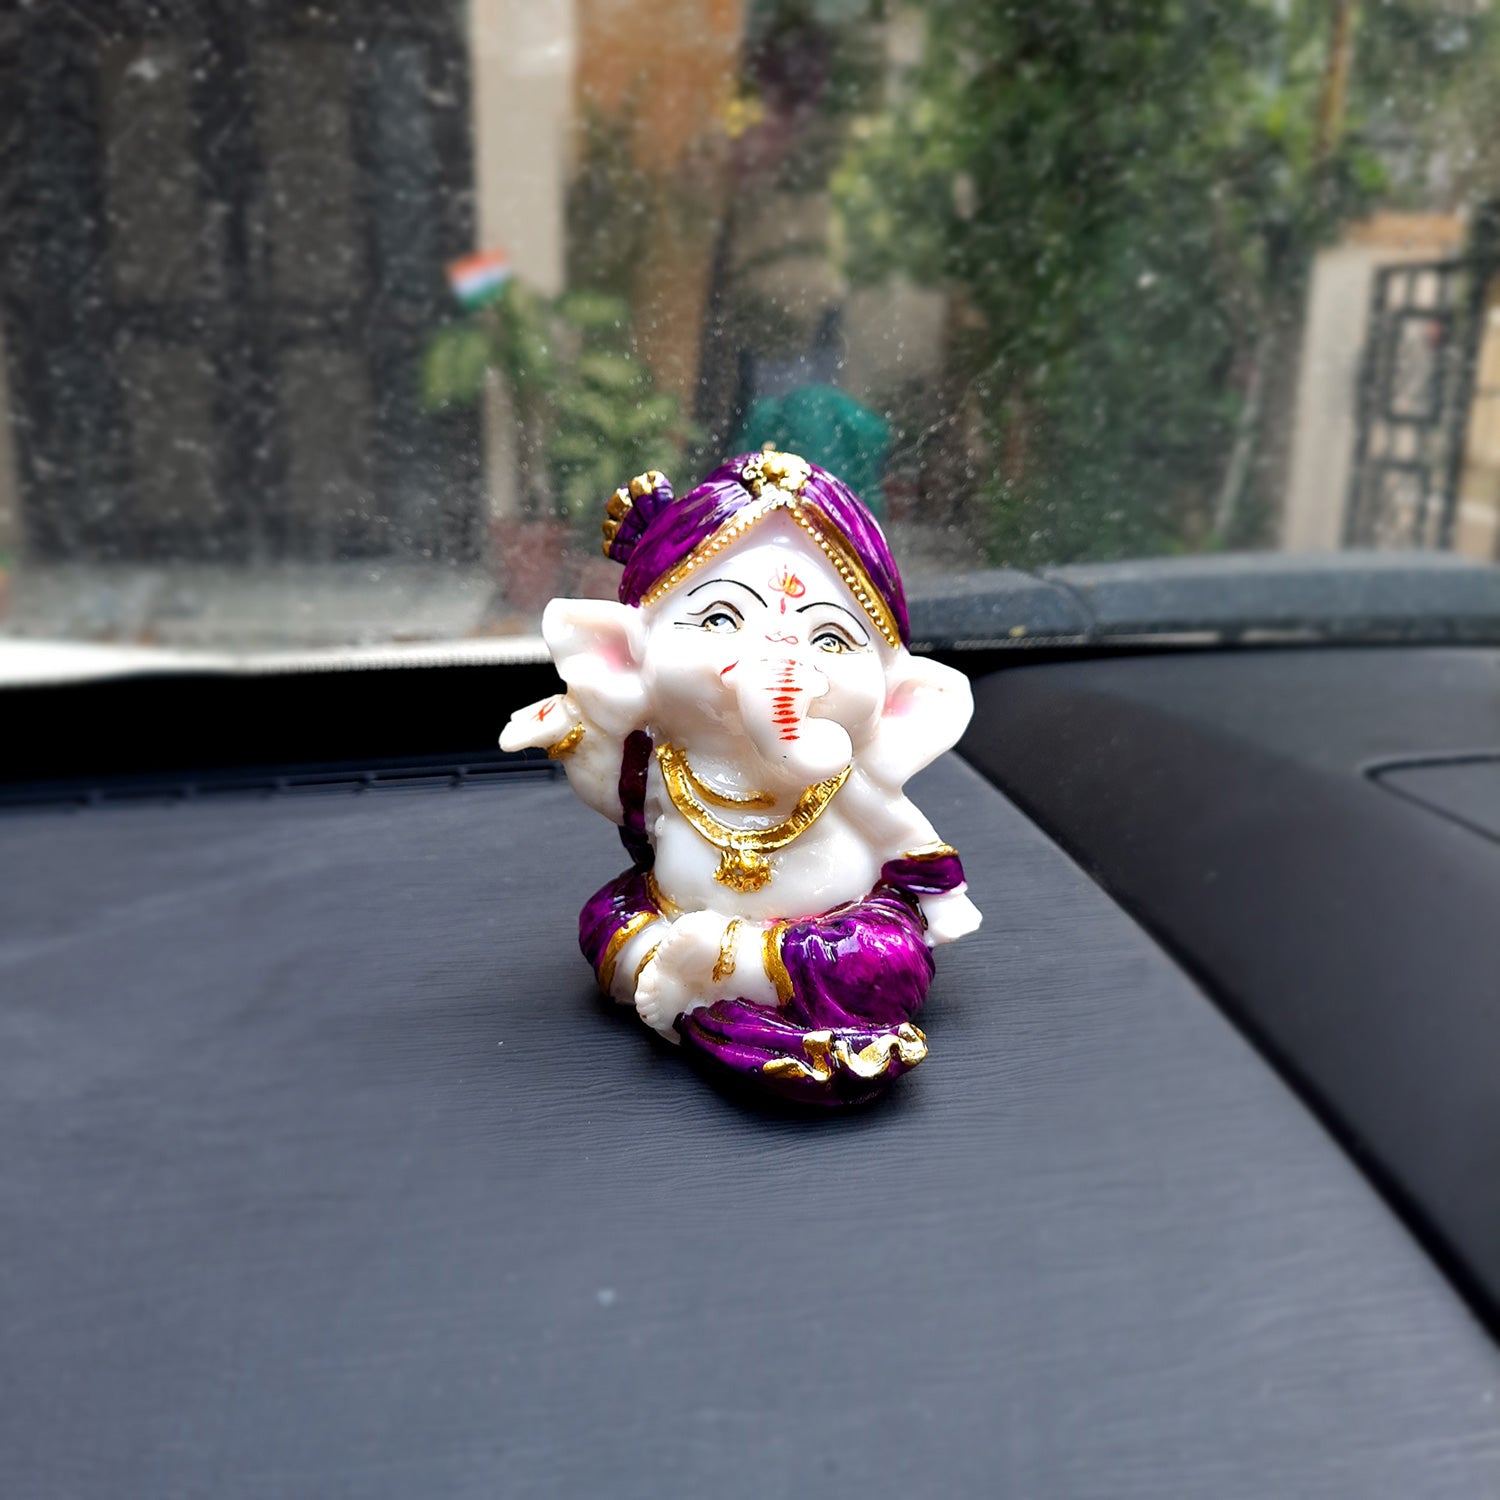 Ganpati Idol | Ganesha for Car Dashboard - 4 inch (Set of 3)- Apkamart